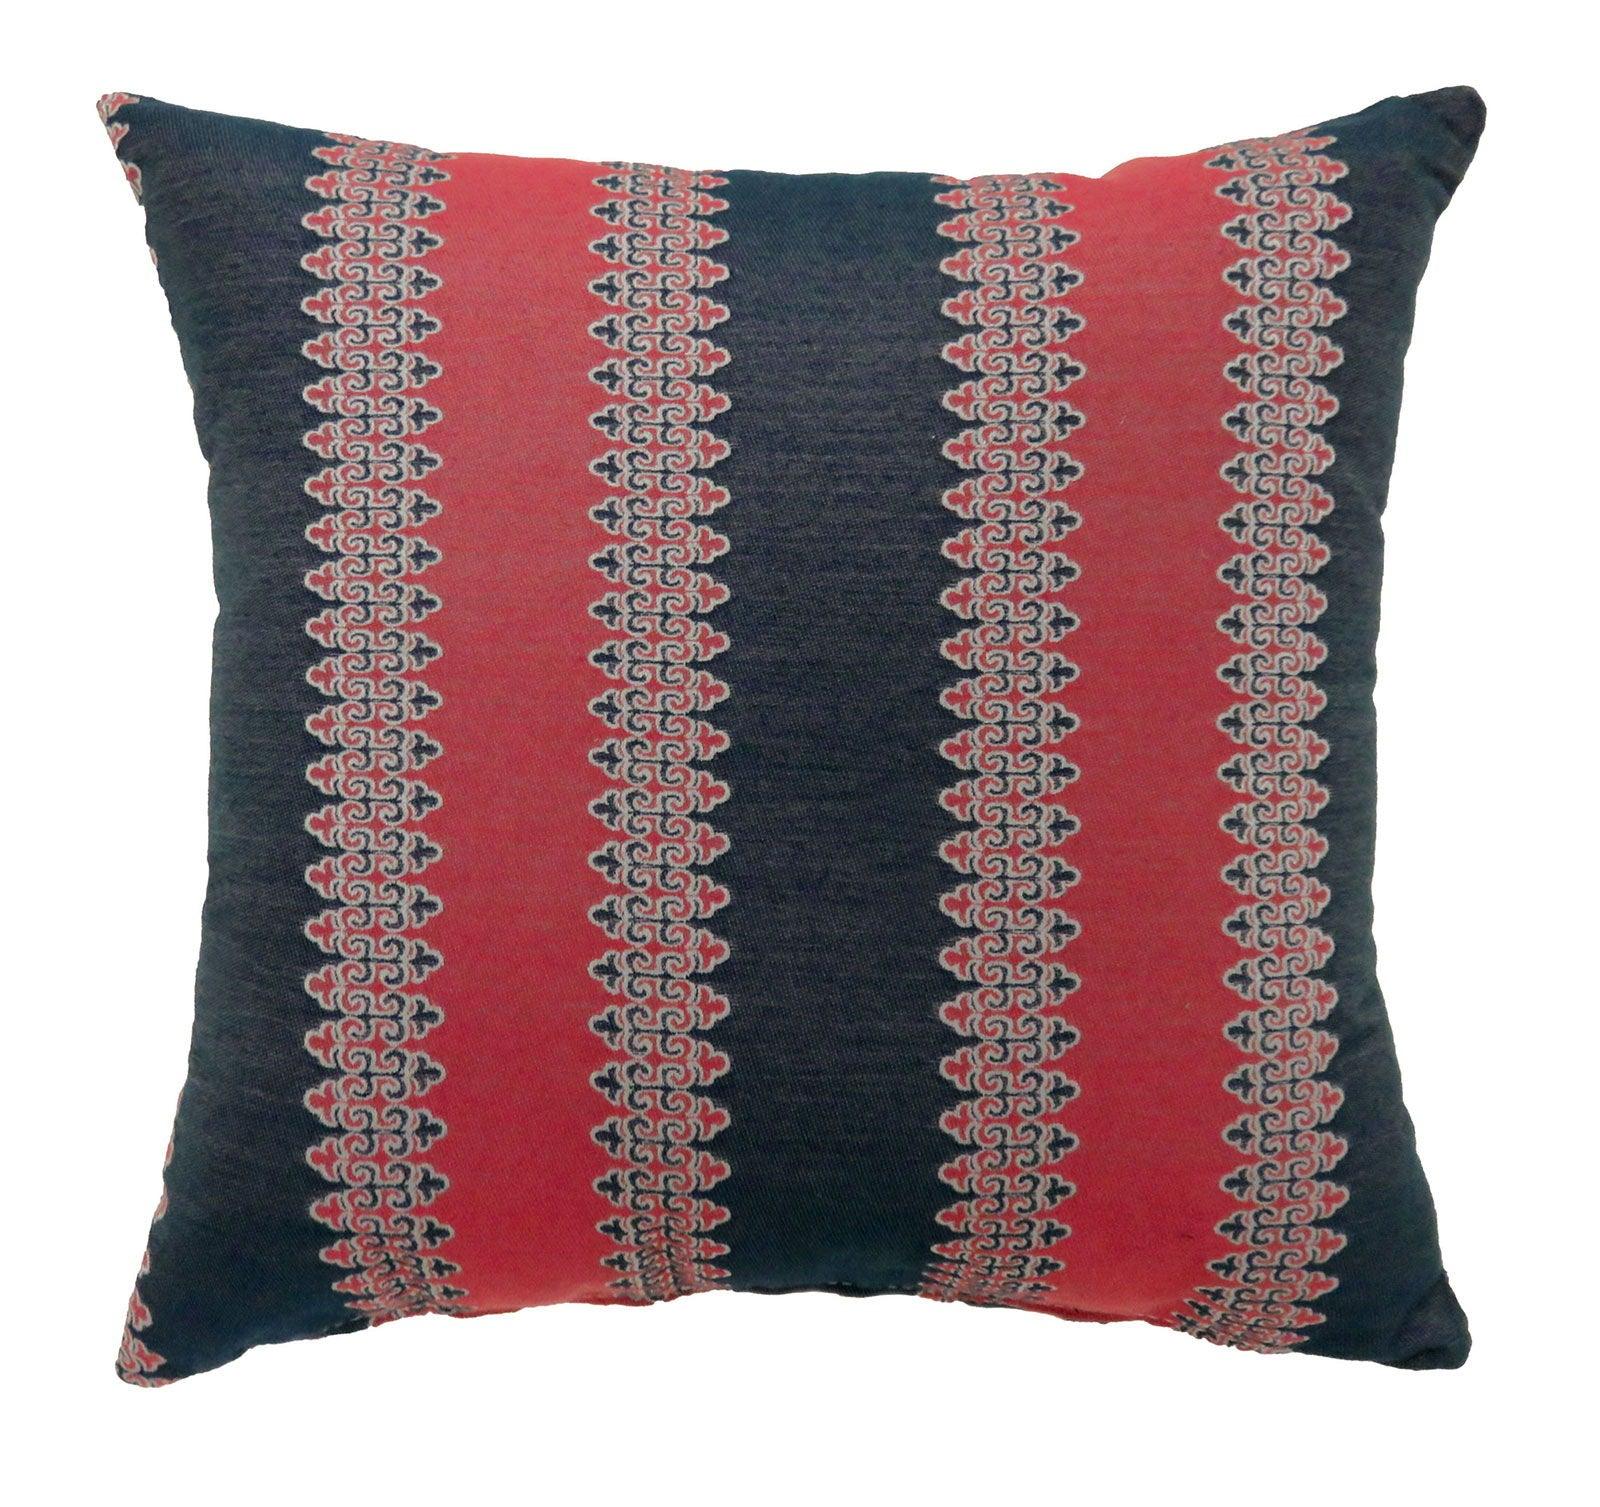 Furniture of America - Lara - X Pillow (Set of 2) - Red / Blue - 5th Avenue Furniture